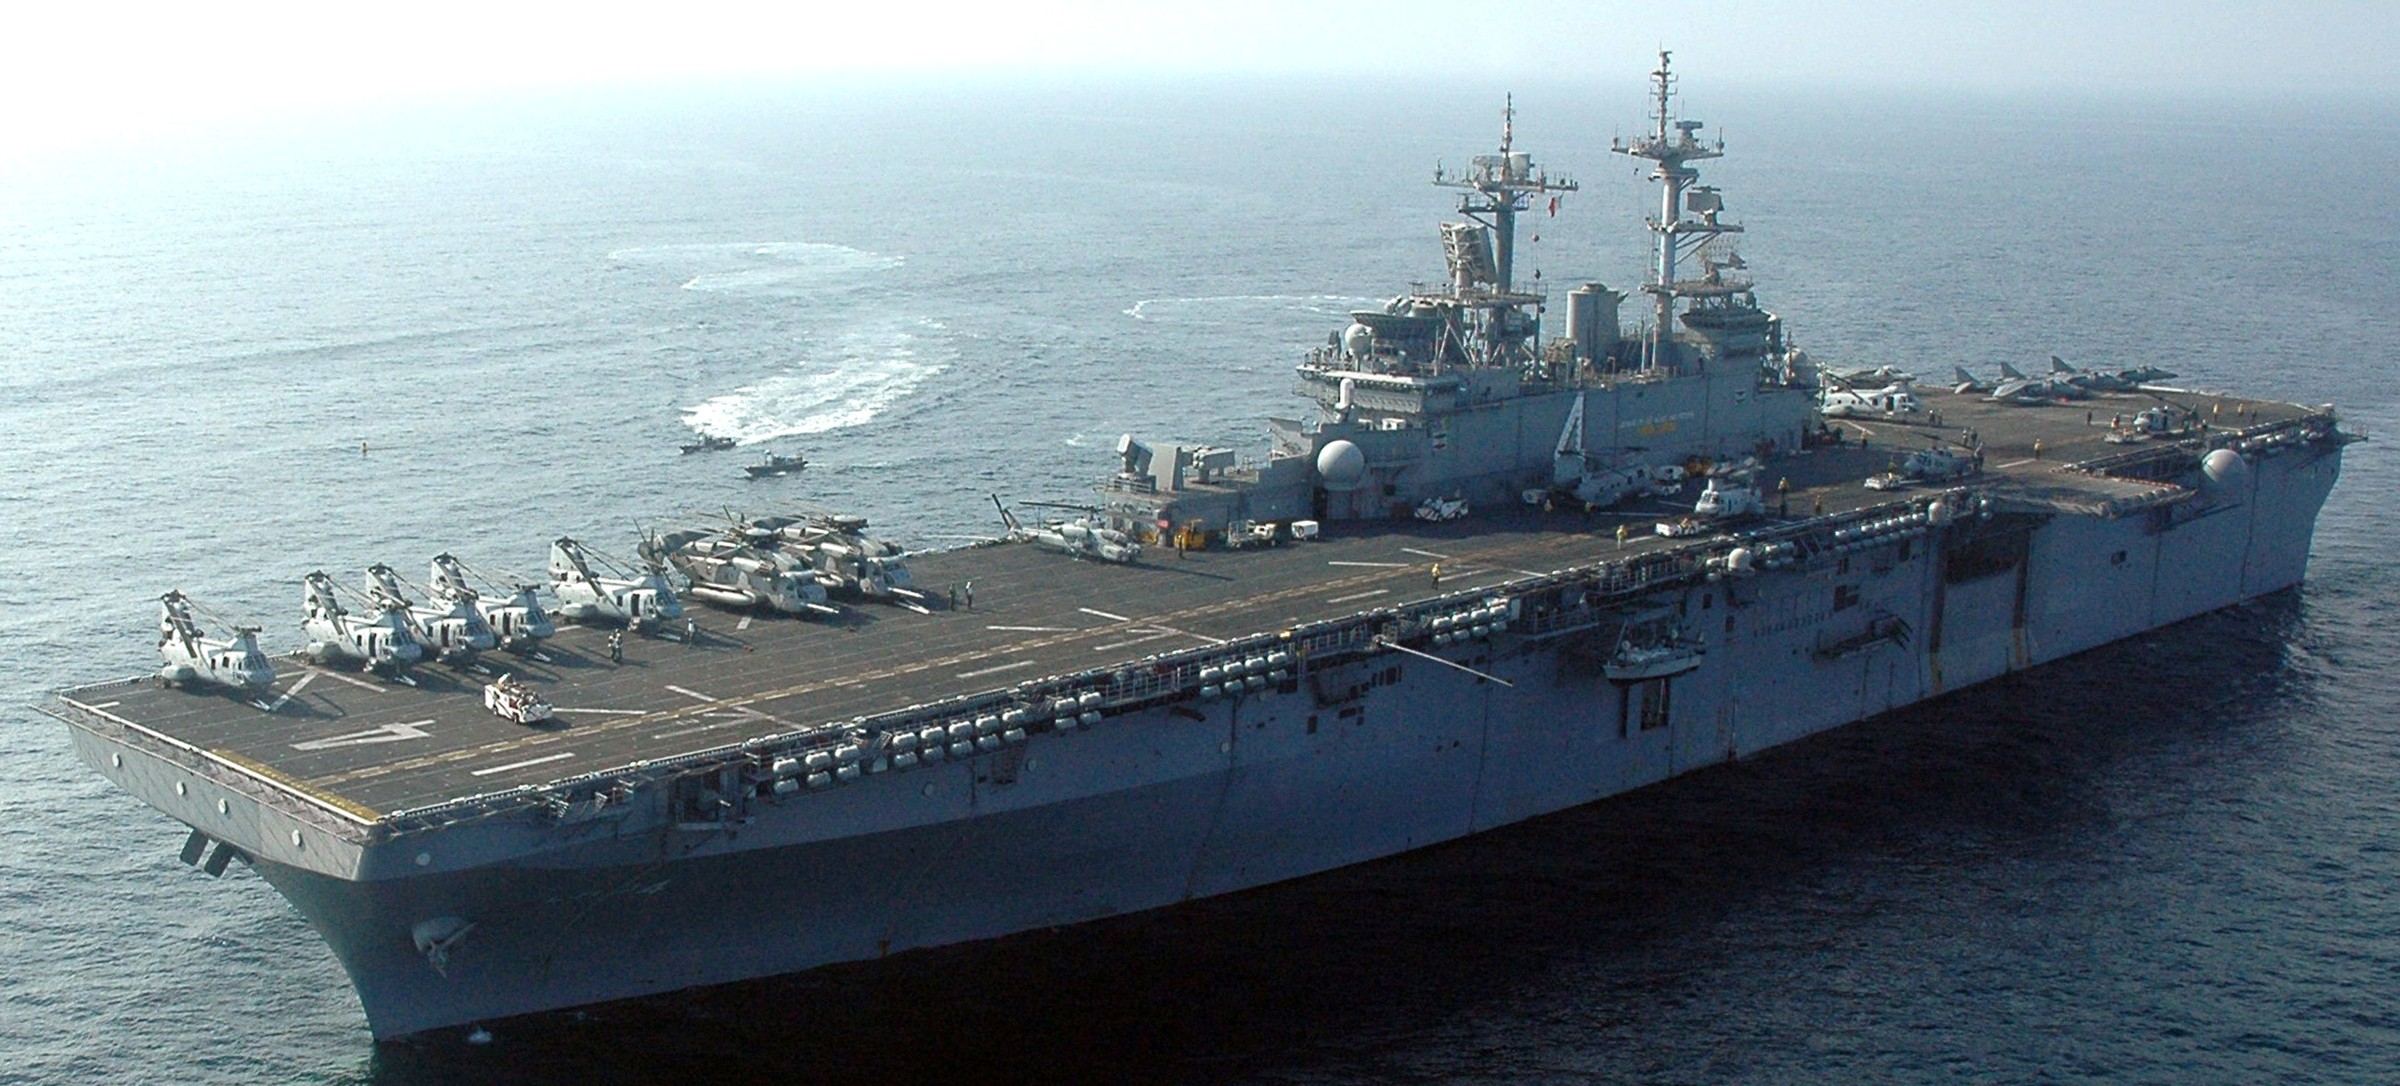 lhd-4 uss boxer wasp class amphibious assault ship dock landing us navy marines hmm-165 comptuex 26